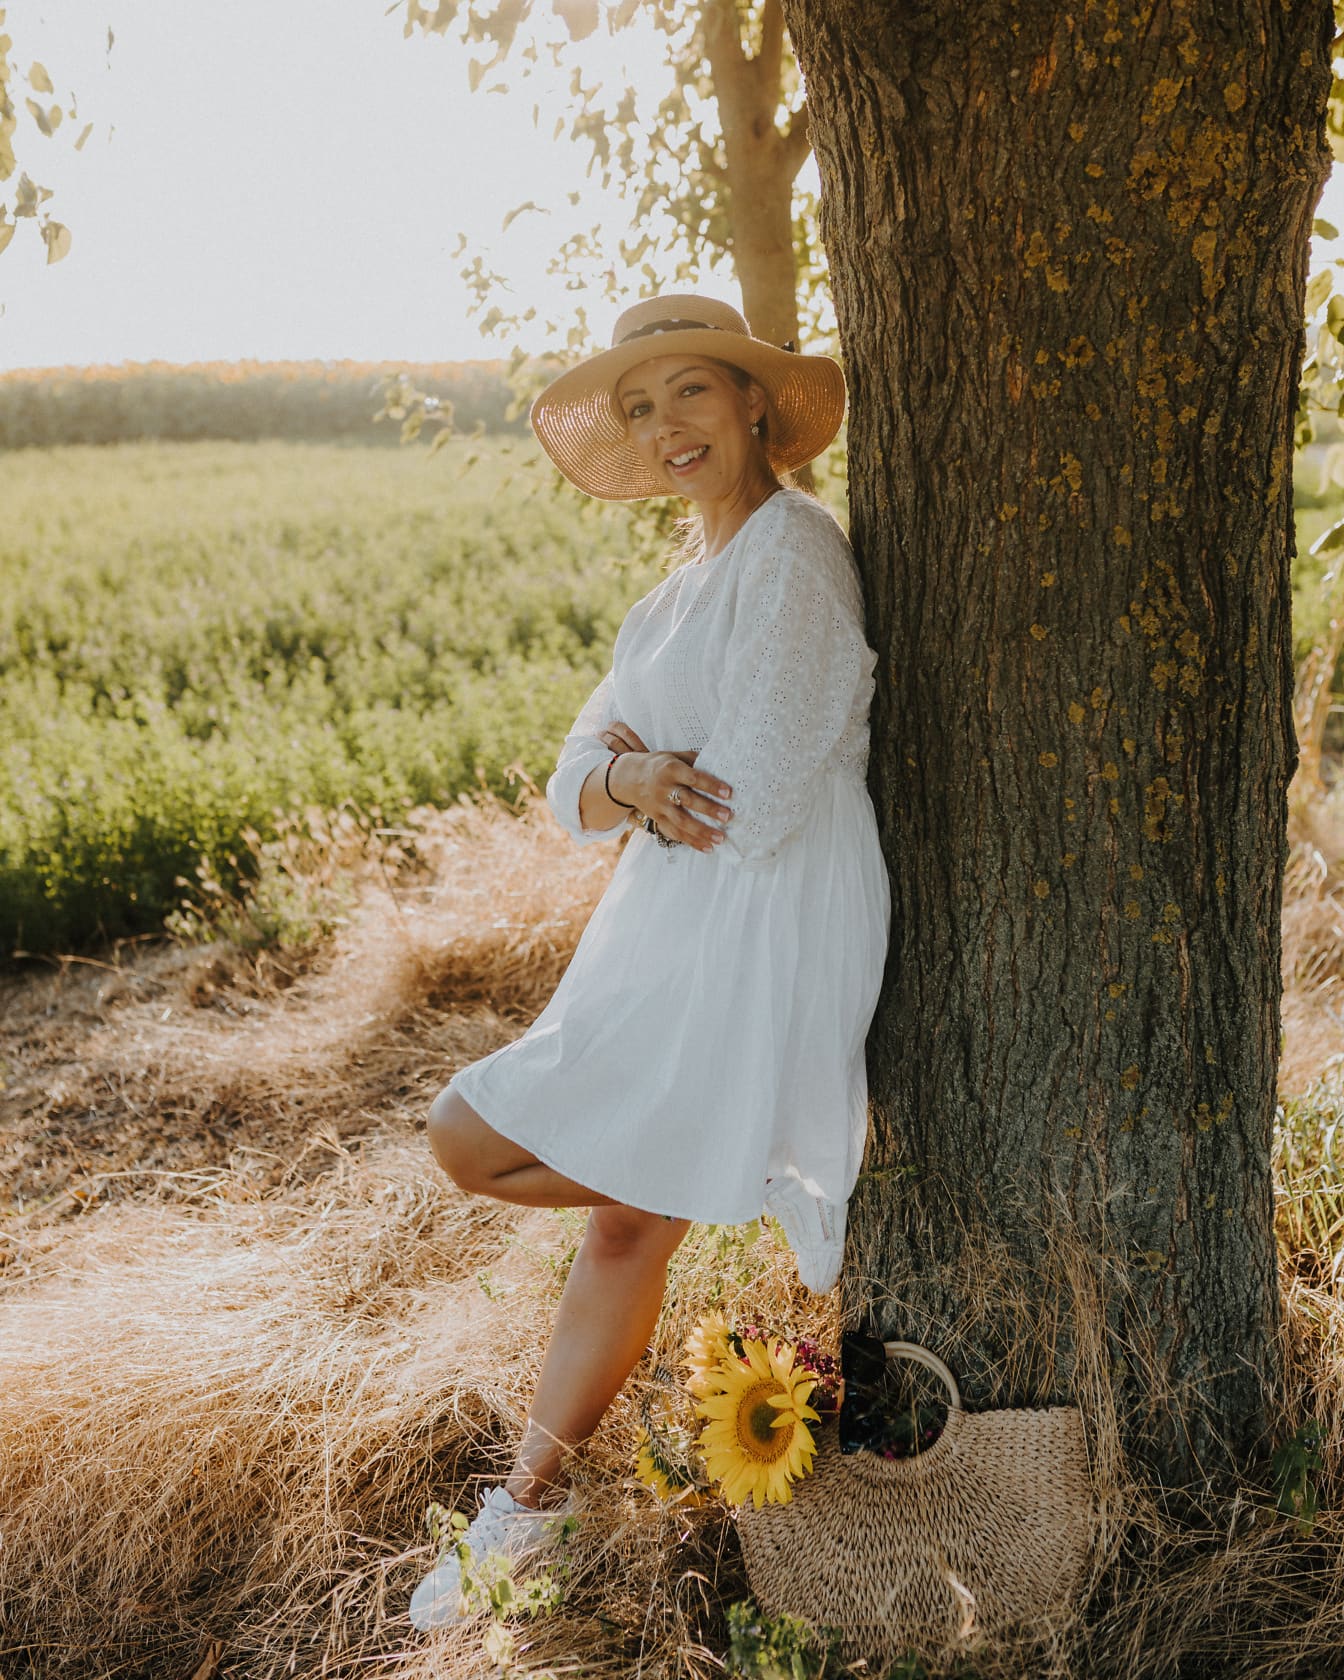 Mulher jovem do campo sorridente em vestido branco e chapéu de palha encostado a uma árvore em um campo